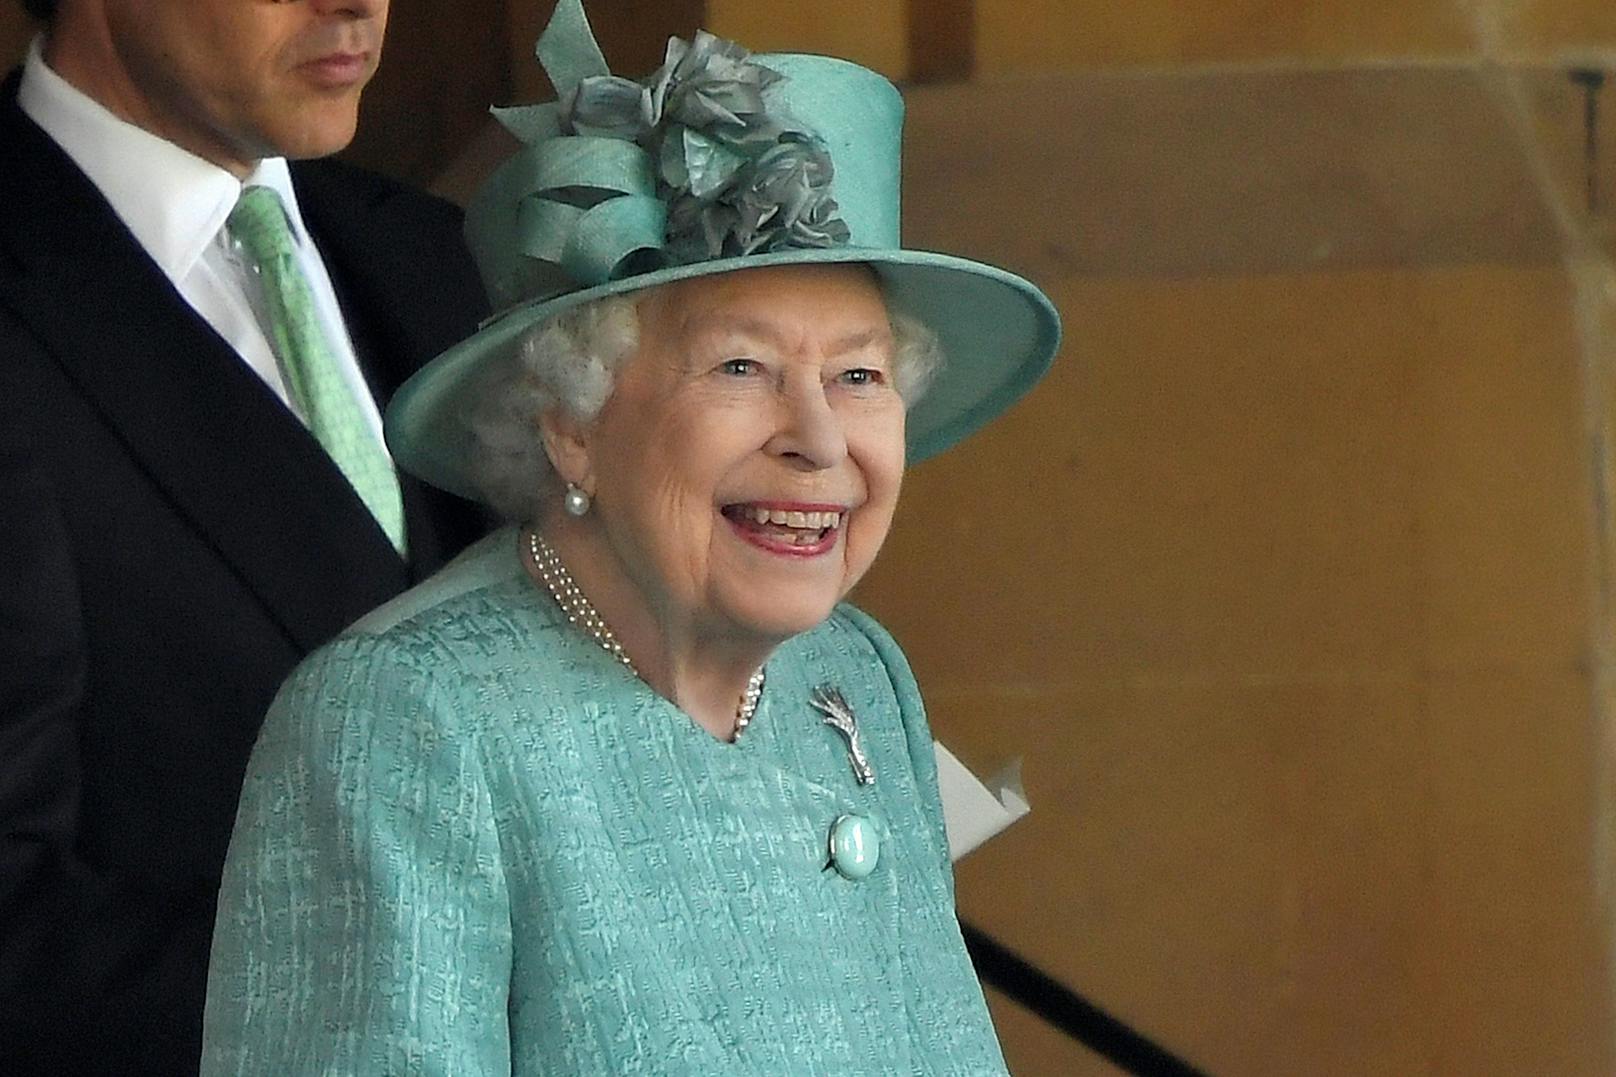 <strong>PLATZ 3:</strong> Bronze geht in diesem Jahr an <strong>Queen Elizabeth II</strong>. Die Monarchin hat aufgrund der Corona-Bedrohung ihren Sitz vom Buckingham Palast nach Windsor verlegt. In den nächsten Wochen soll sie auch eine Impfung gegen das Virus bekommen.<br>